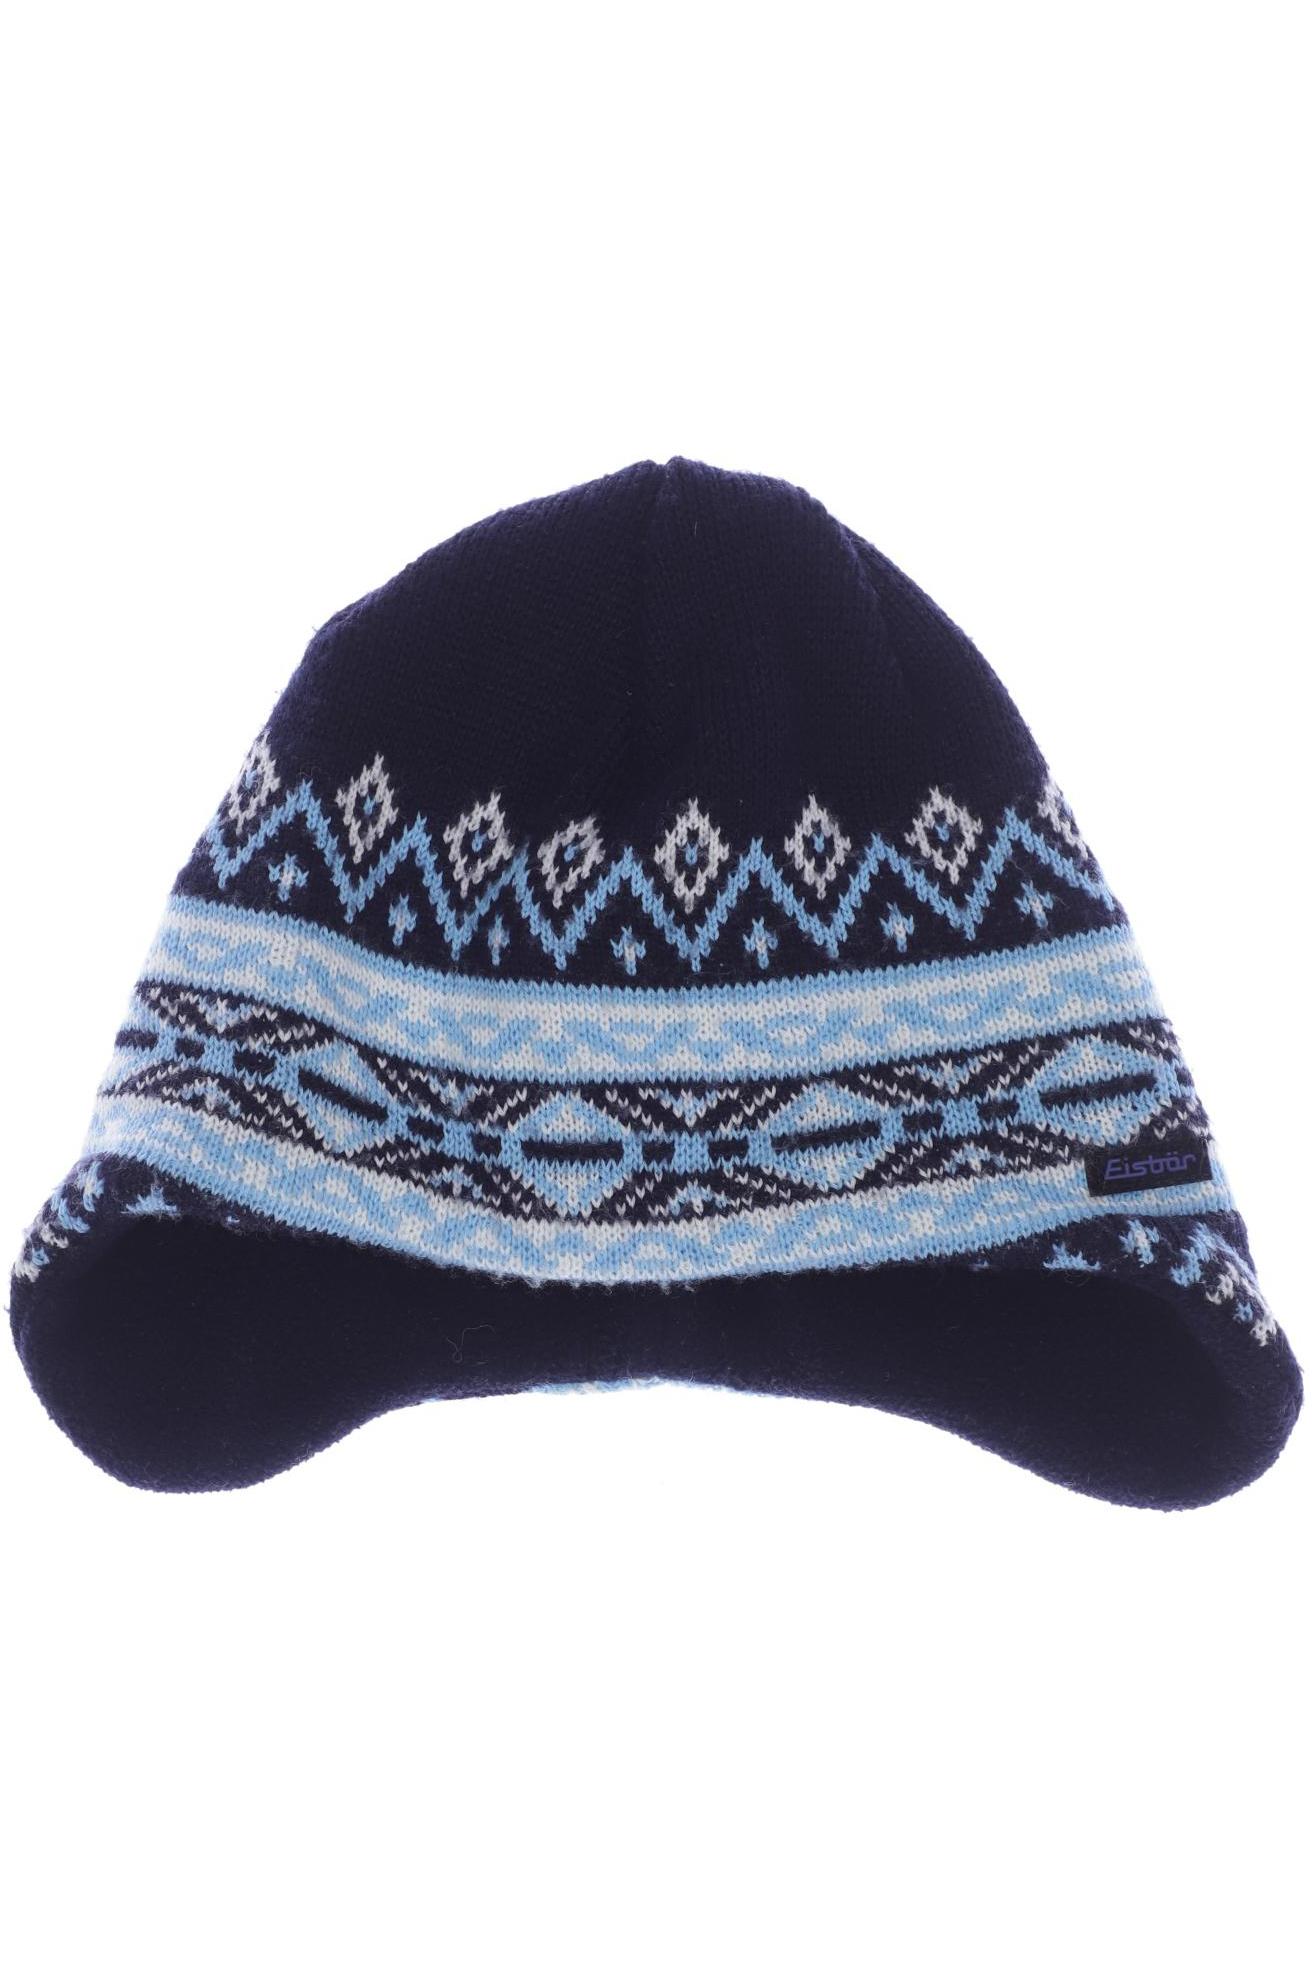 Eisbär Damen Hut/Mütze, marineblau von EISBÄR